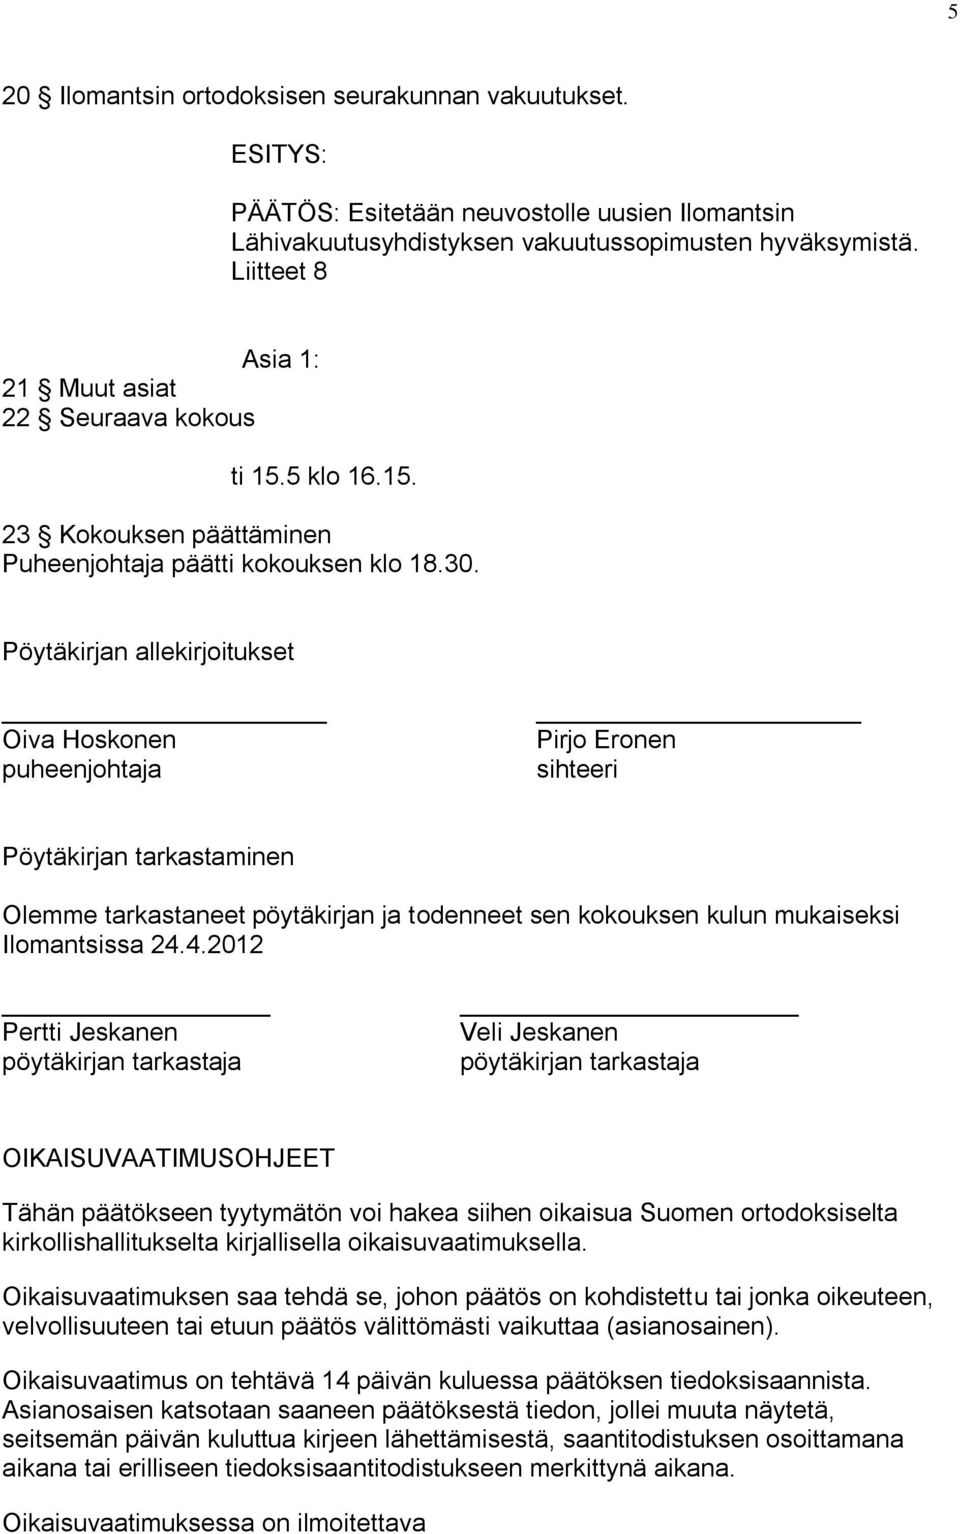 Pöytäkirjan allekirjoitukset Oiva Hoskonen puheenjohtaja Pirjo Eronen sihteeri Pöytäkirjan tarkastaminen Olemme tarkastaneet pöytäkirjan ja todenneet sen kokouksen kulun mukaiseksi Ilomantsissa 24.